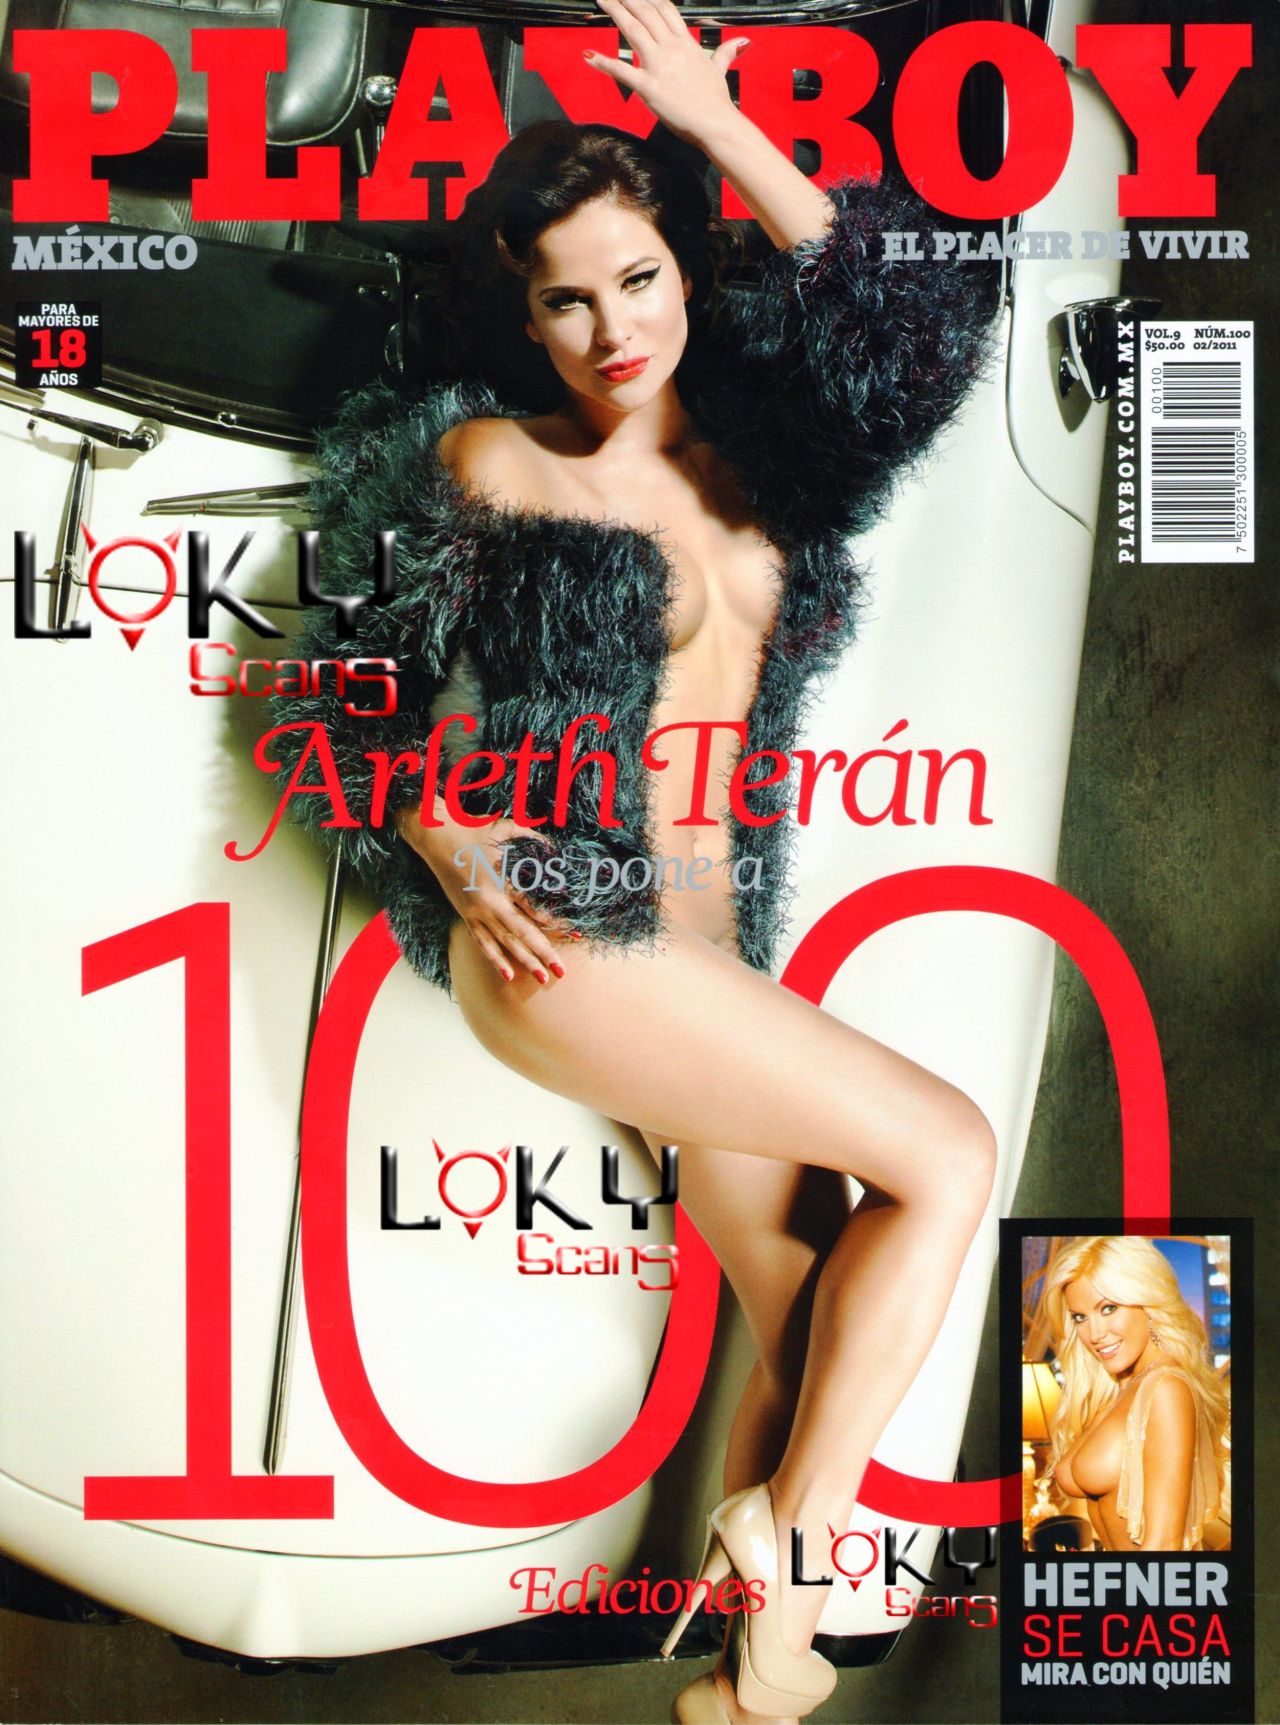 Arleth Teran - Playboy Mexico 2011 Febrero (24 Fotos HQ)Arleth Teran desnuda en la